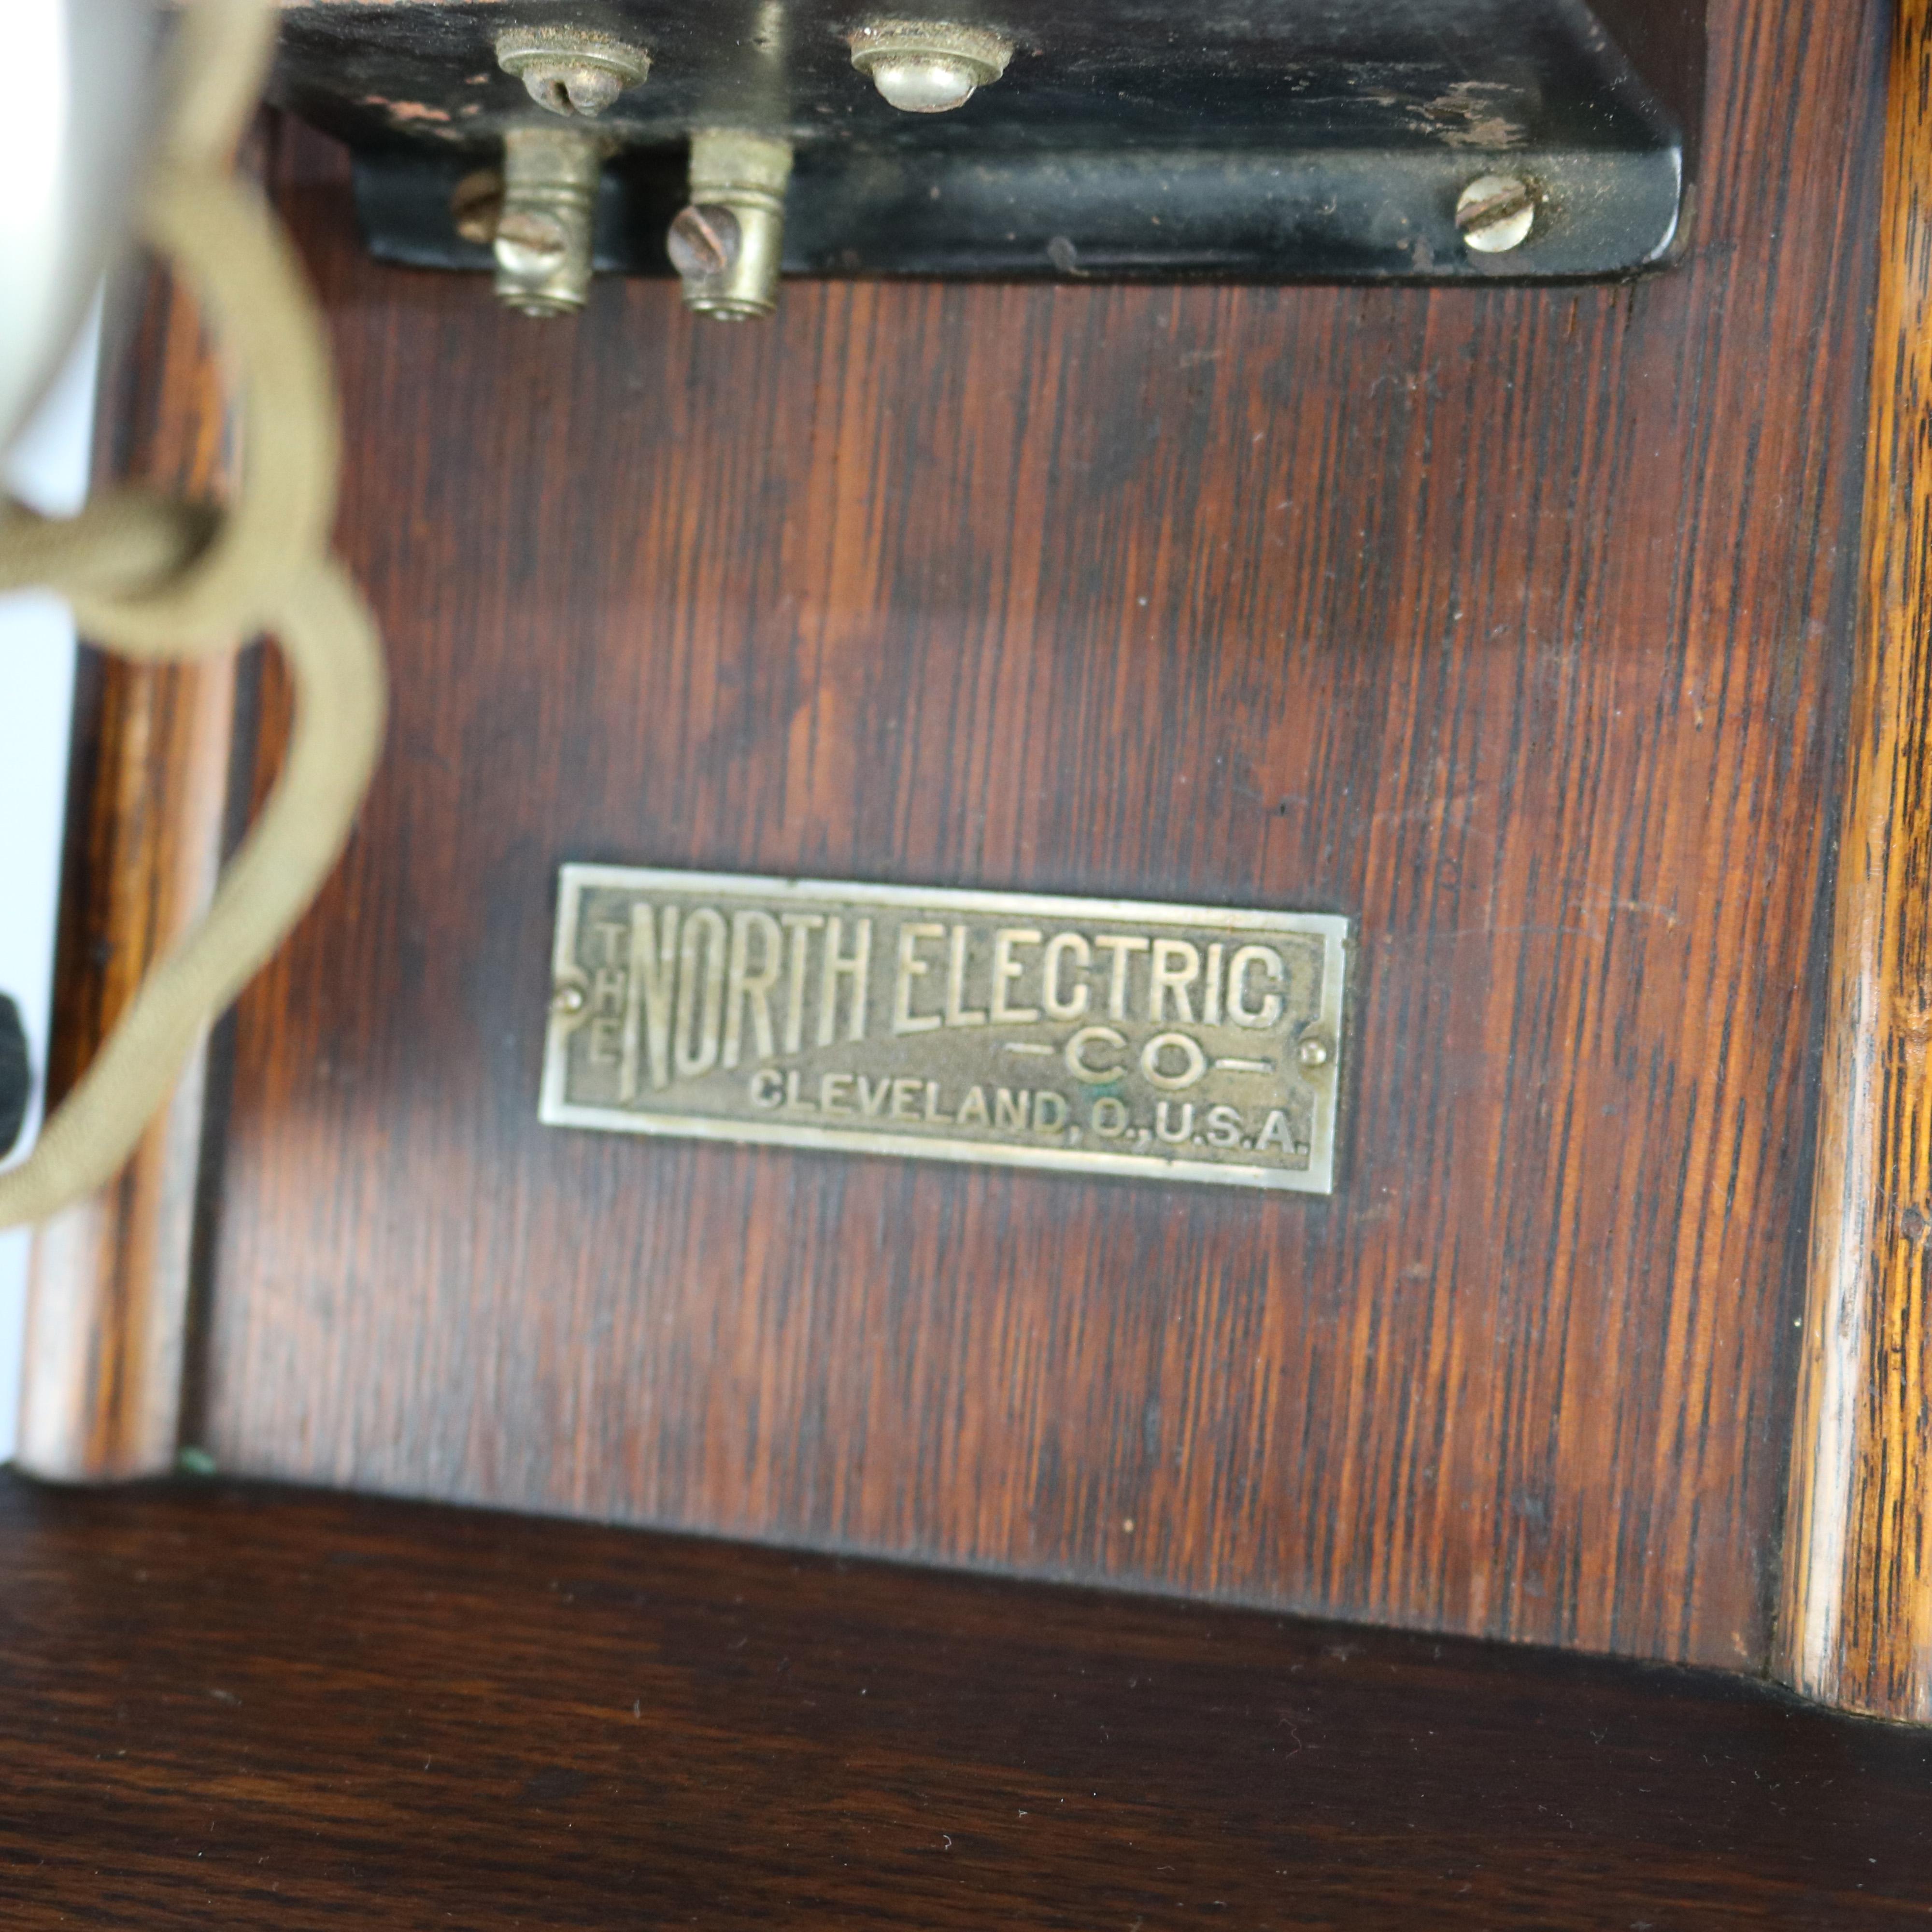 1890 telephone